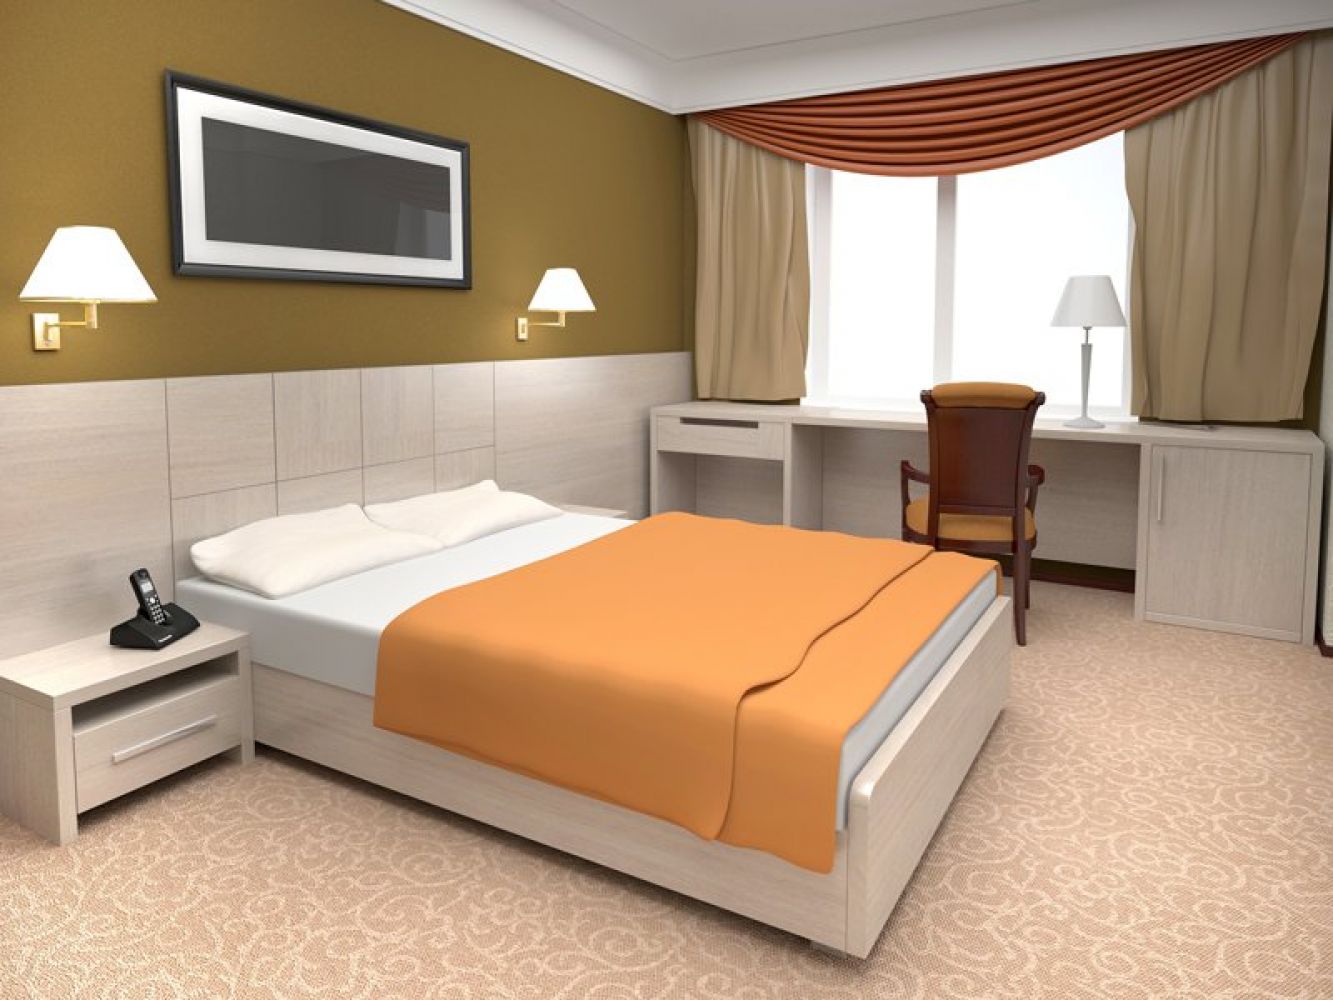 Дизайн мебели для гостиницы и отеля